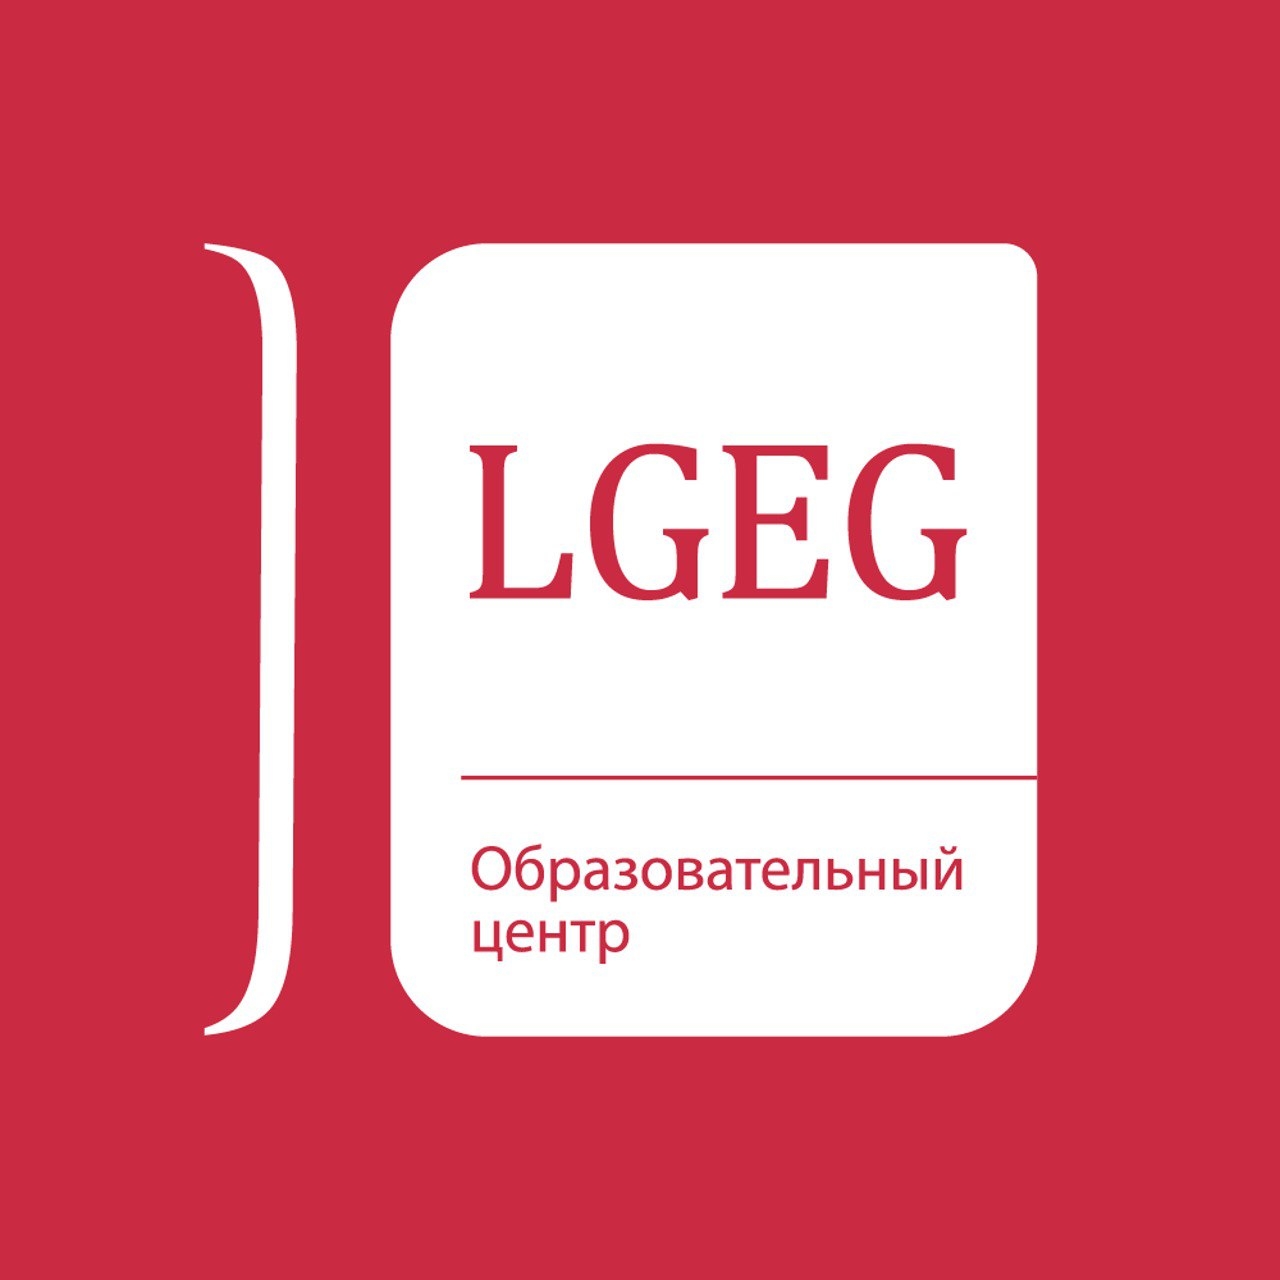 LGEG образовательный центр : отзывы о работодателе